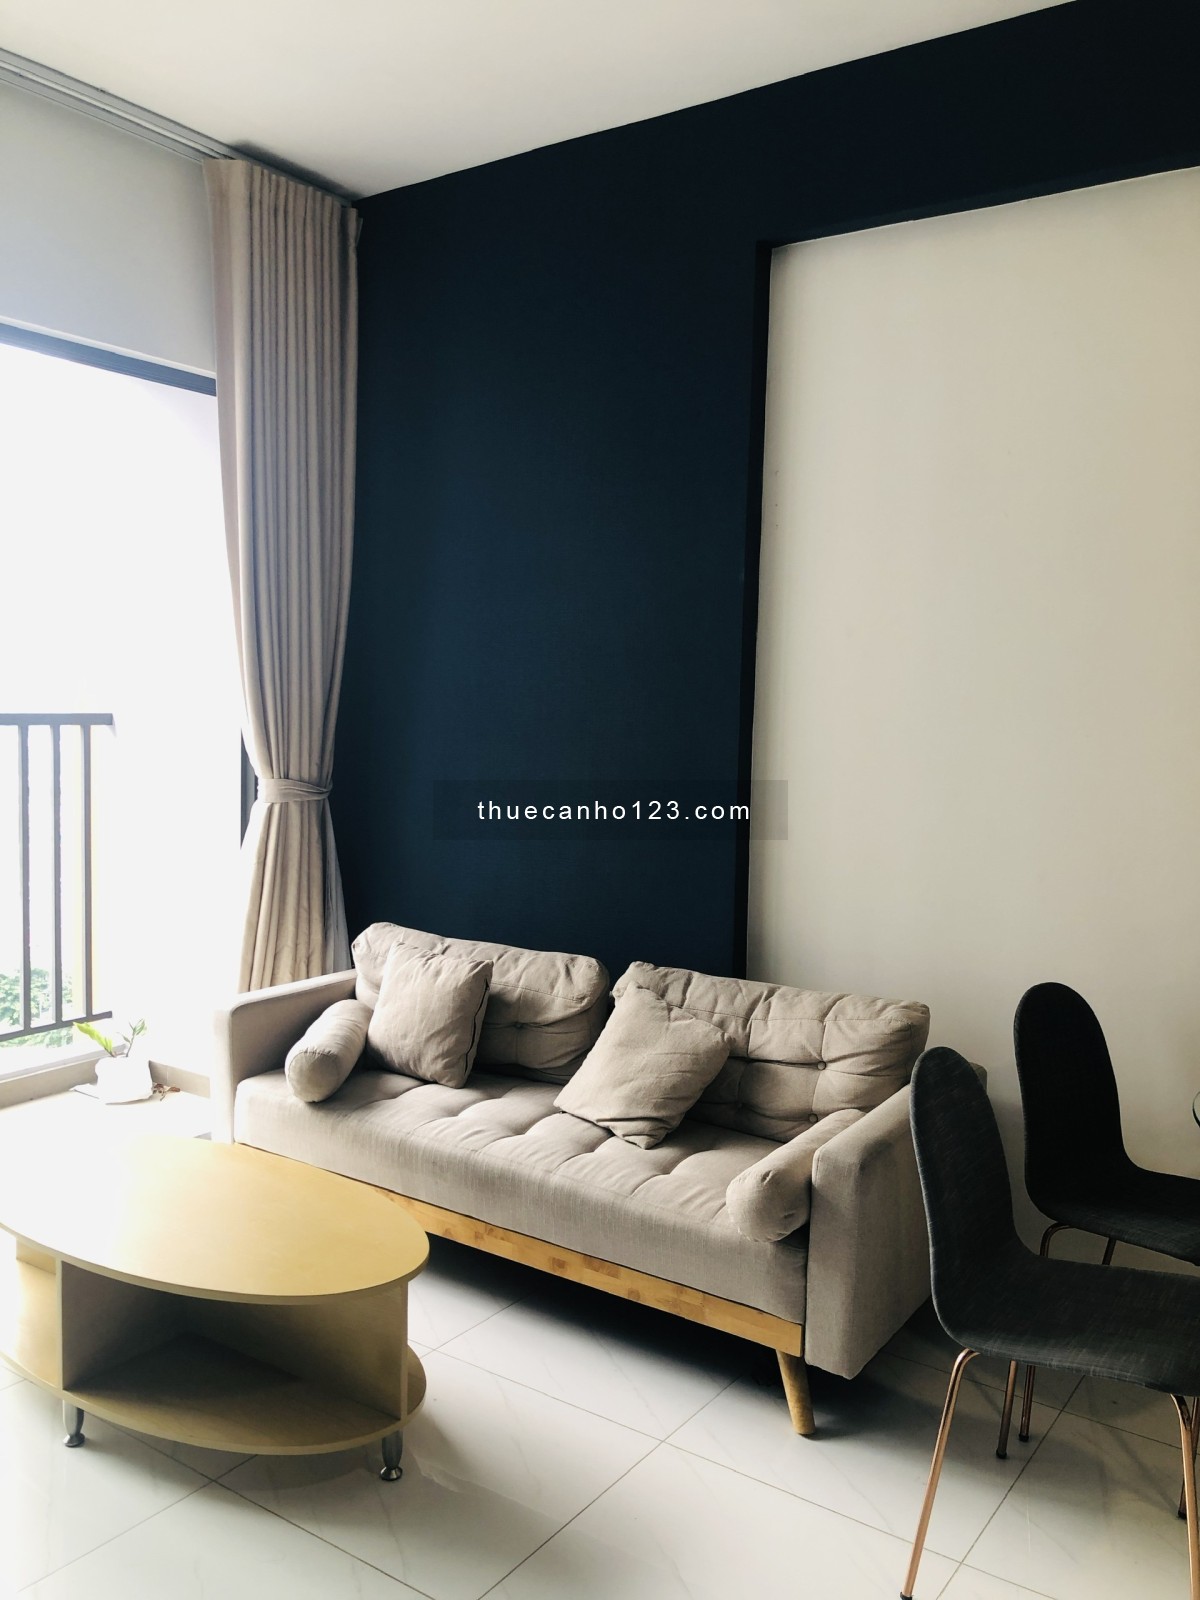 Cho thuê căn hộ Safira Khang Điền, 67m2 2PN - 2WC có nội thất, giá chỉ 8tr/tháng, Lh 0388668882